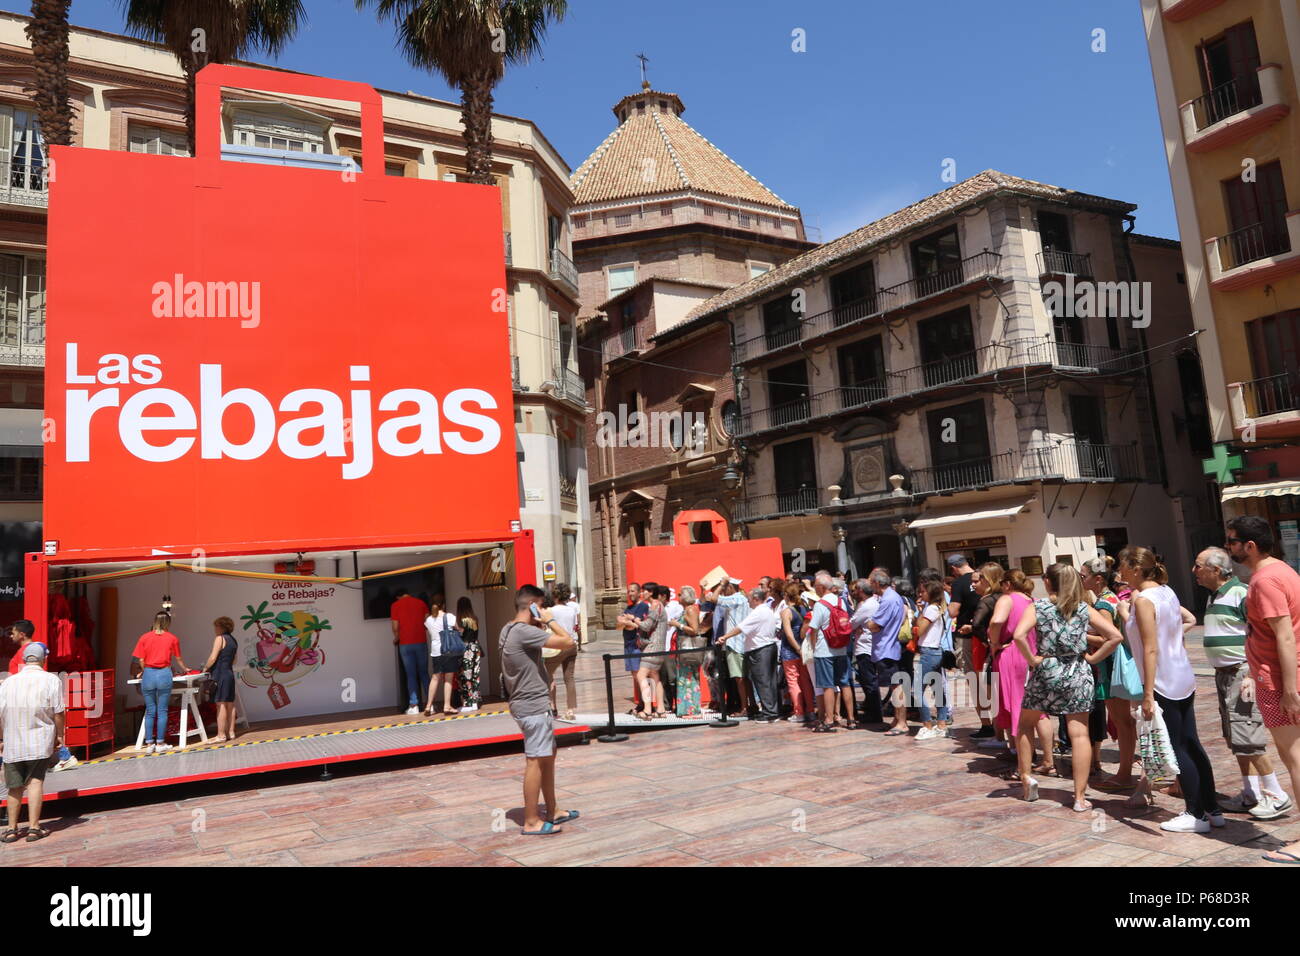 Junio 28, 2018 - Junio 28 (Málaga) El Corte Ingles presenta su campaña de ventas de en Málaga.La compañía ha elegido la ciudad de Málaga para presentar esta campaña de rebajas